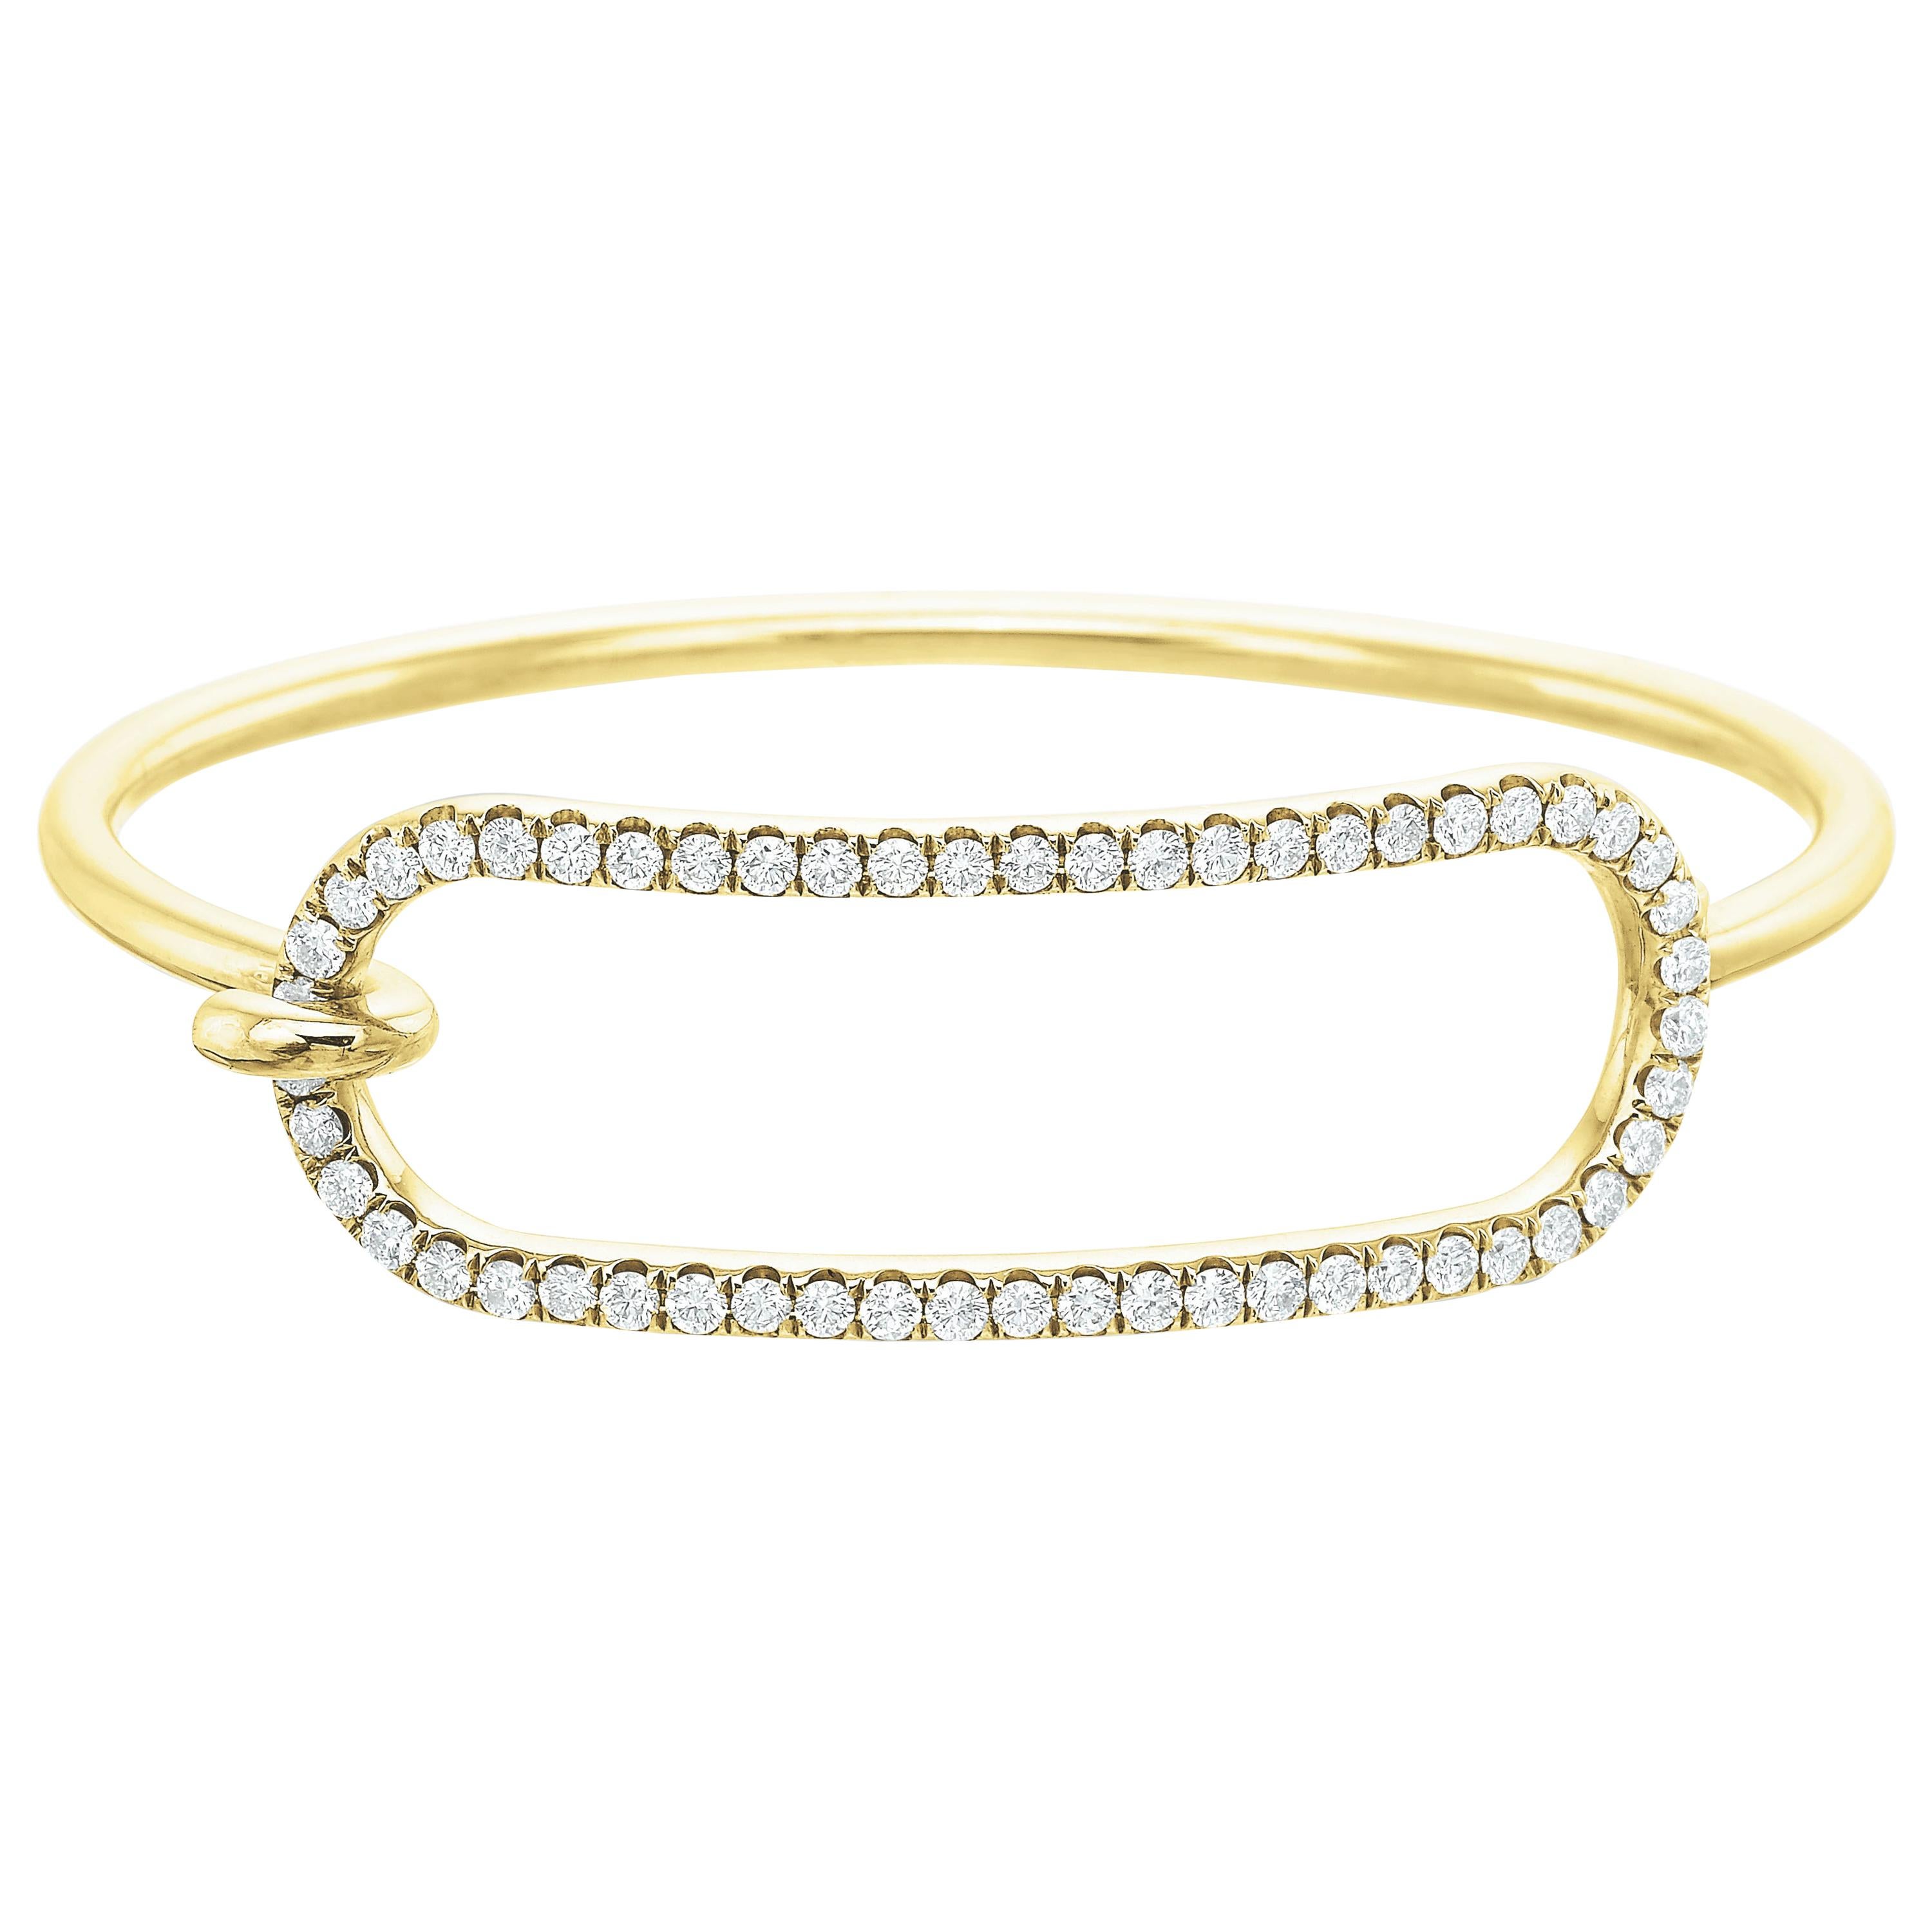 Grand bracelet de tension en or jaune 18 carats et diamants